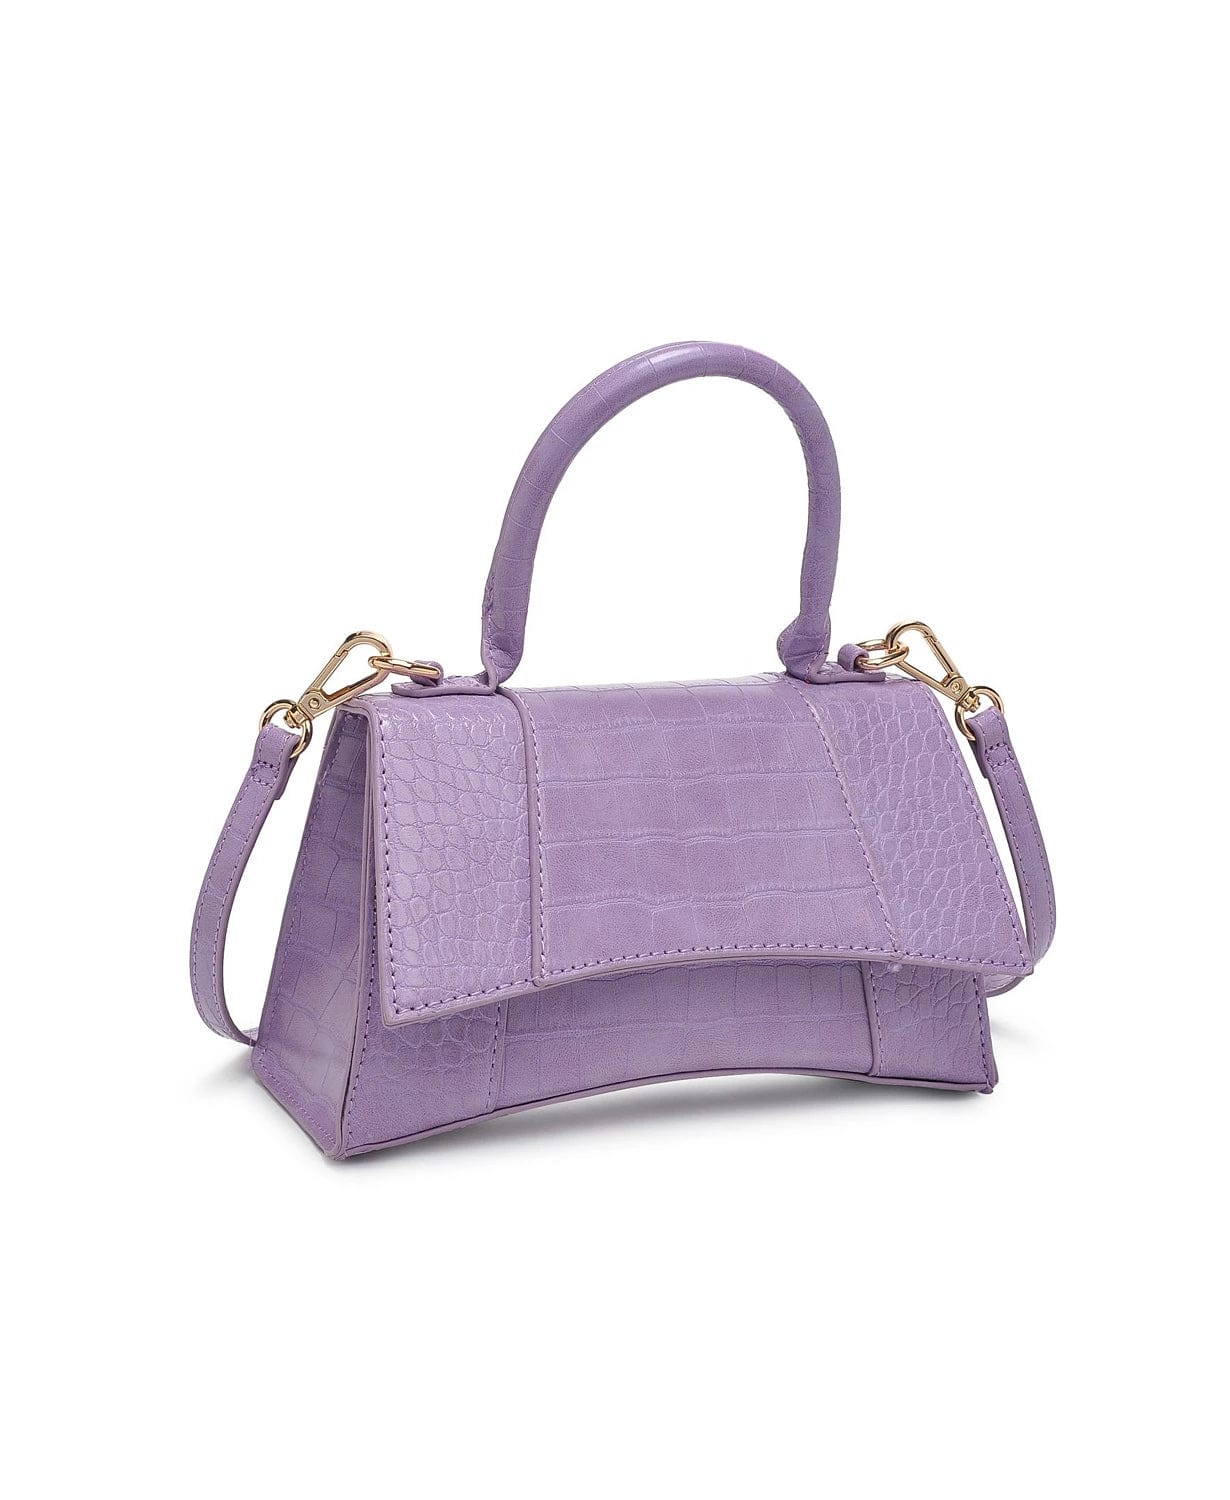 Lucas Croc Bag Lilac, Bag by Urban Expressions | LIT Boutique